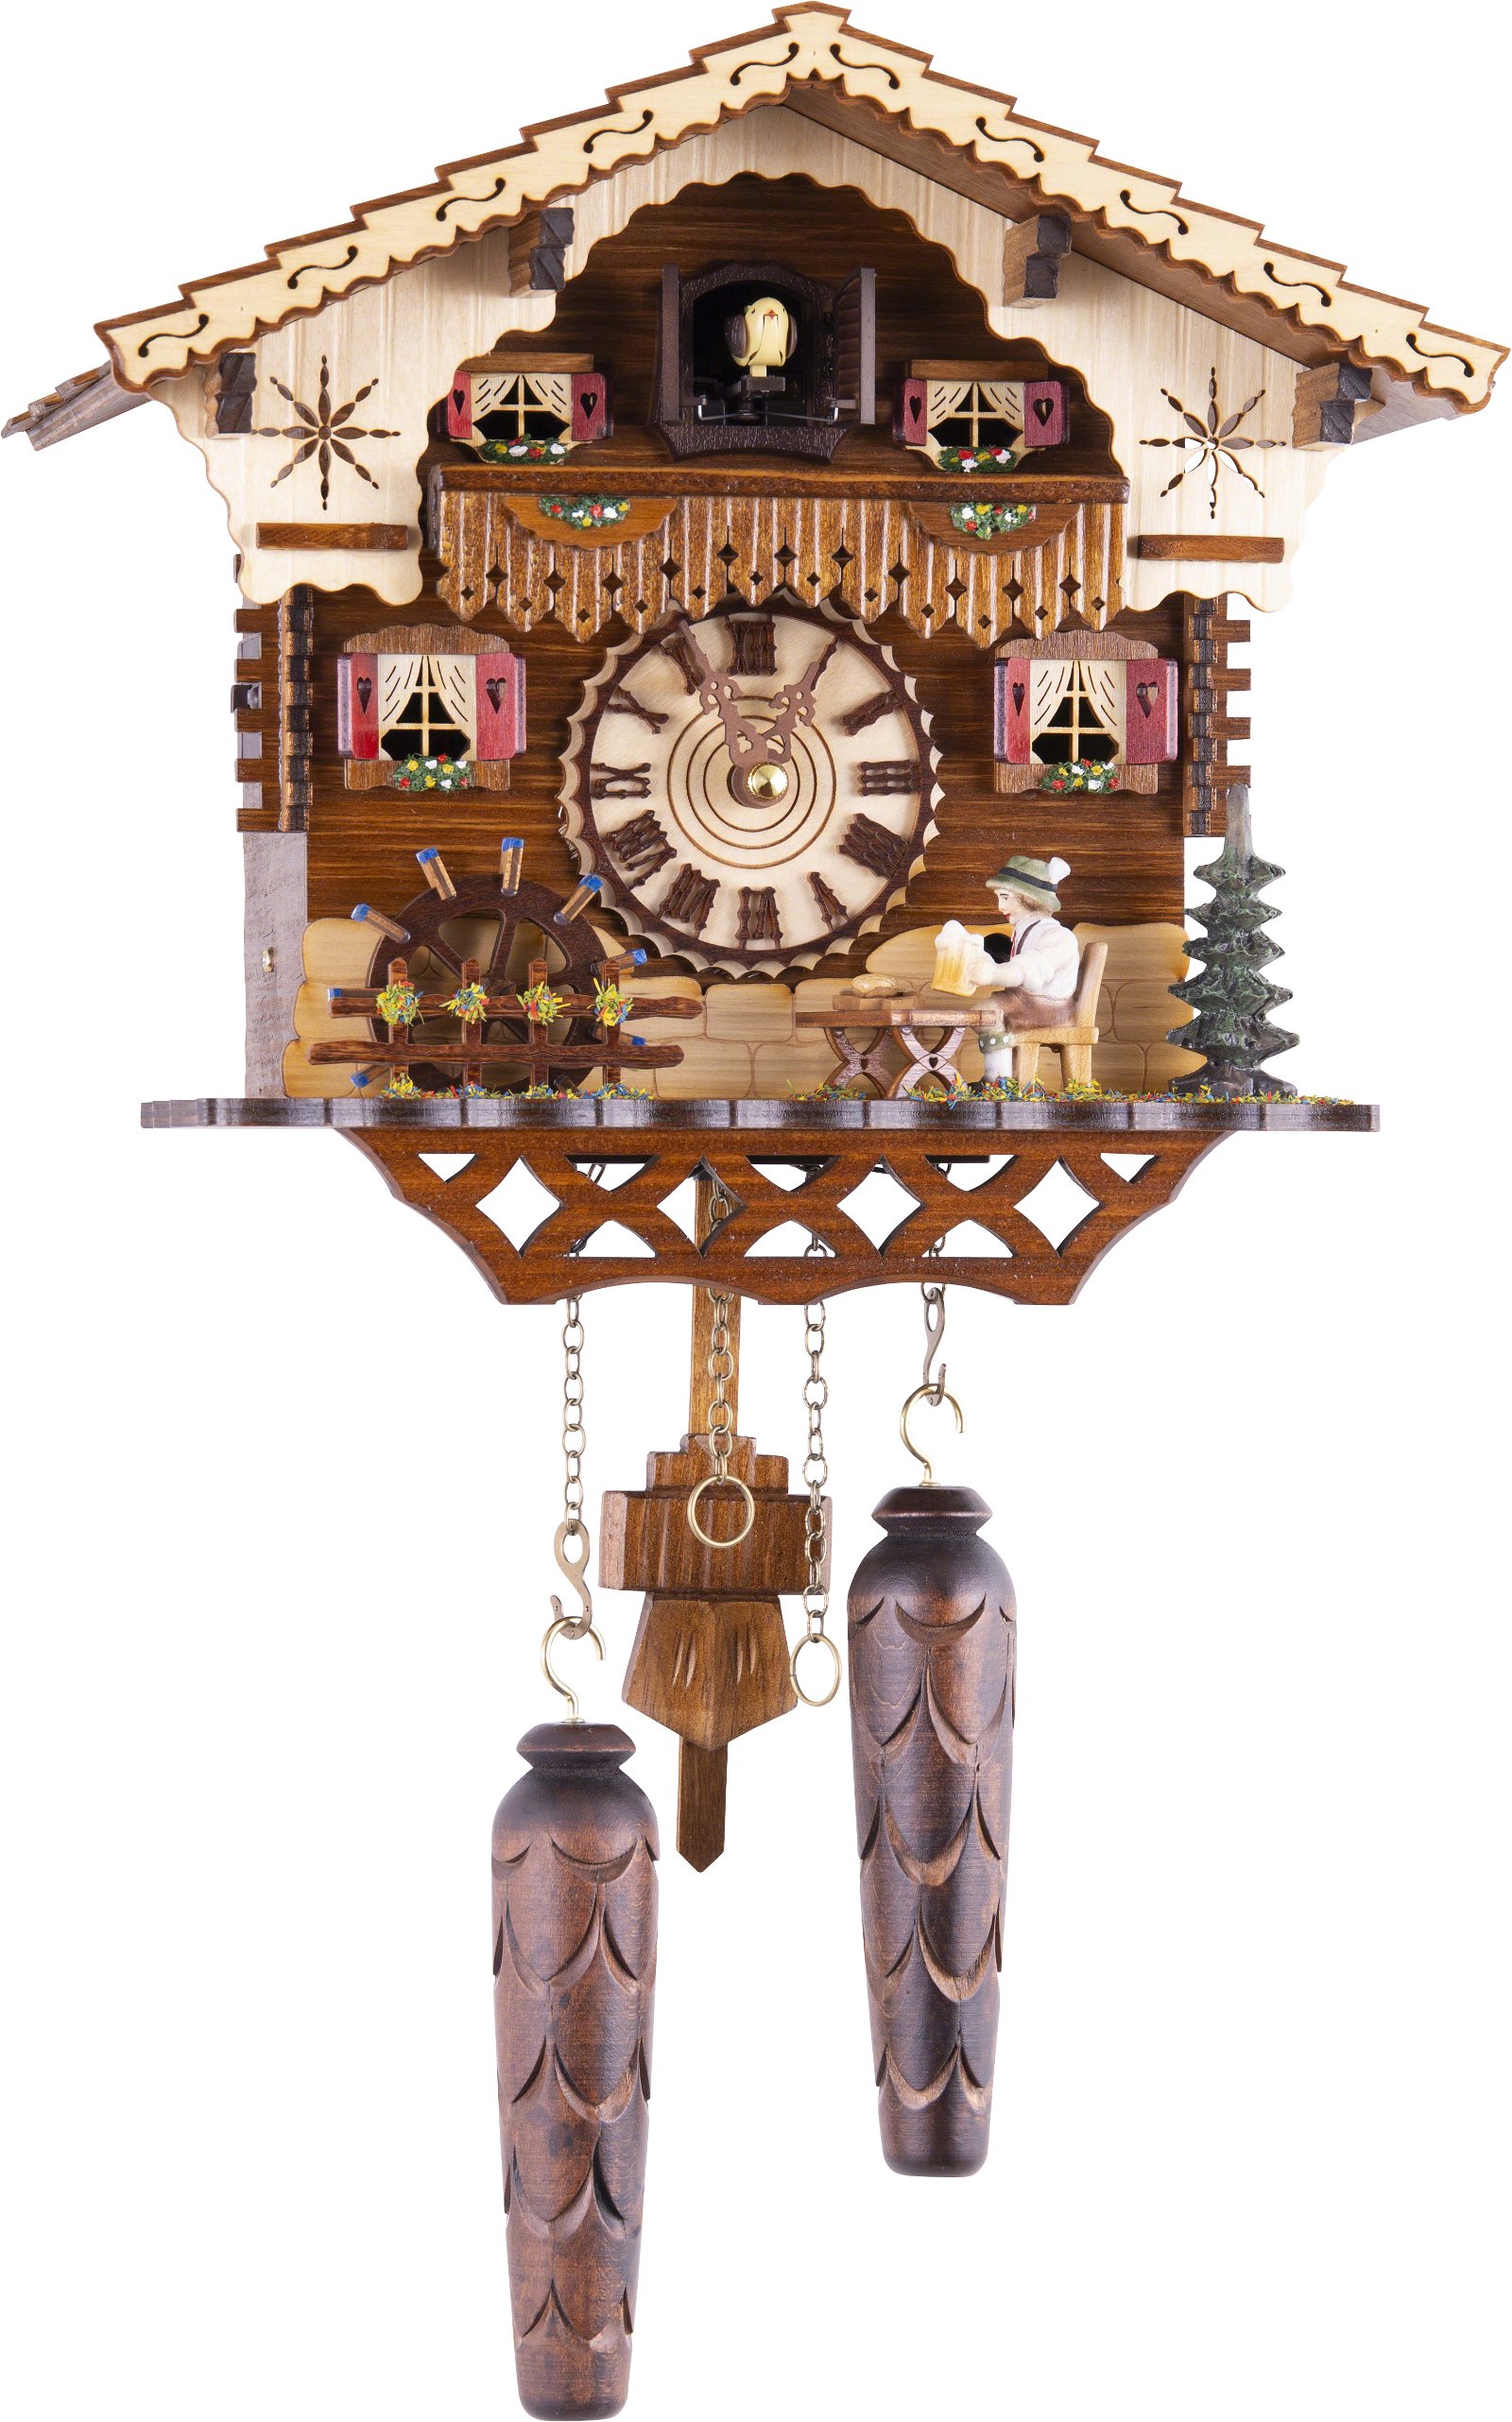 Kuckucksuhr Quarz-Uhrwerk Chalet-Stil 25cm von Trenkle Uhren